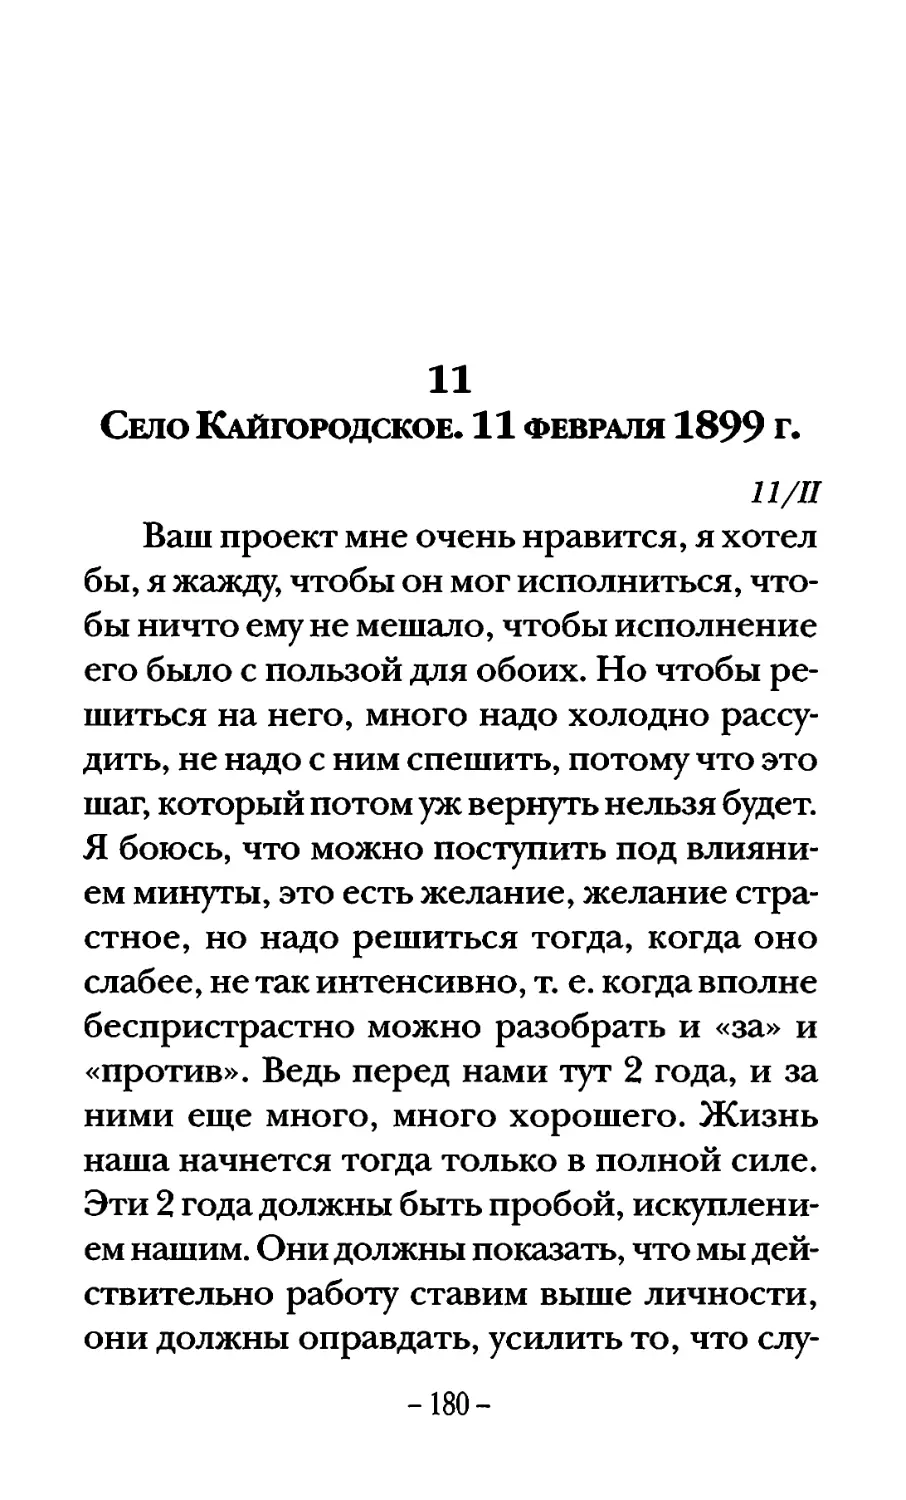 Село Кайгородское. 11 февраля 1899 г.